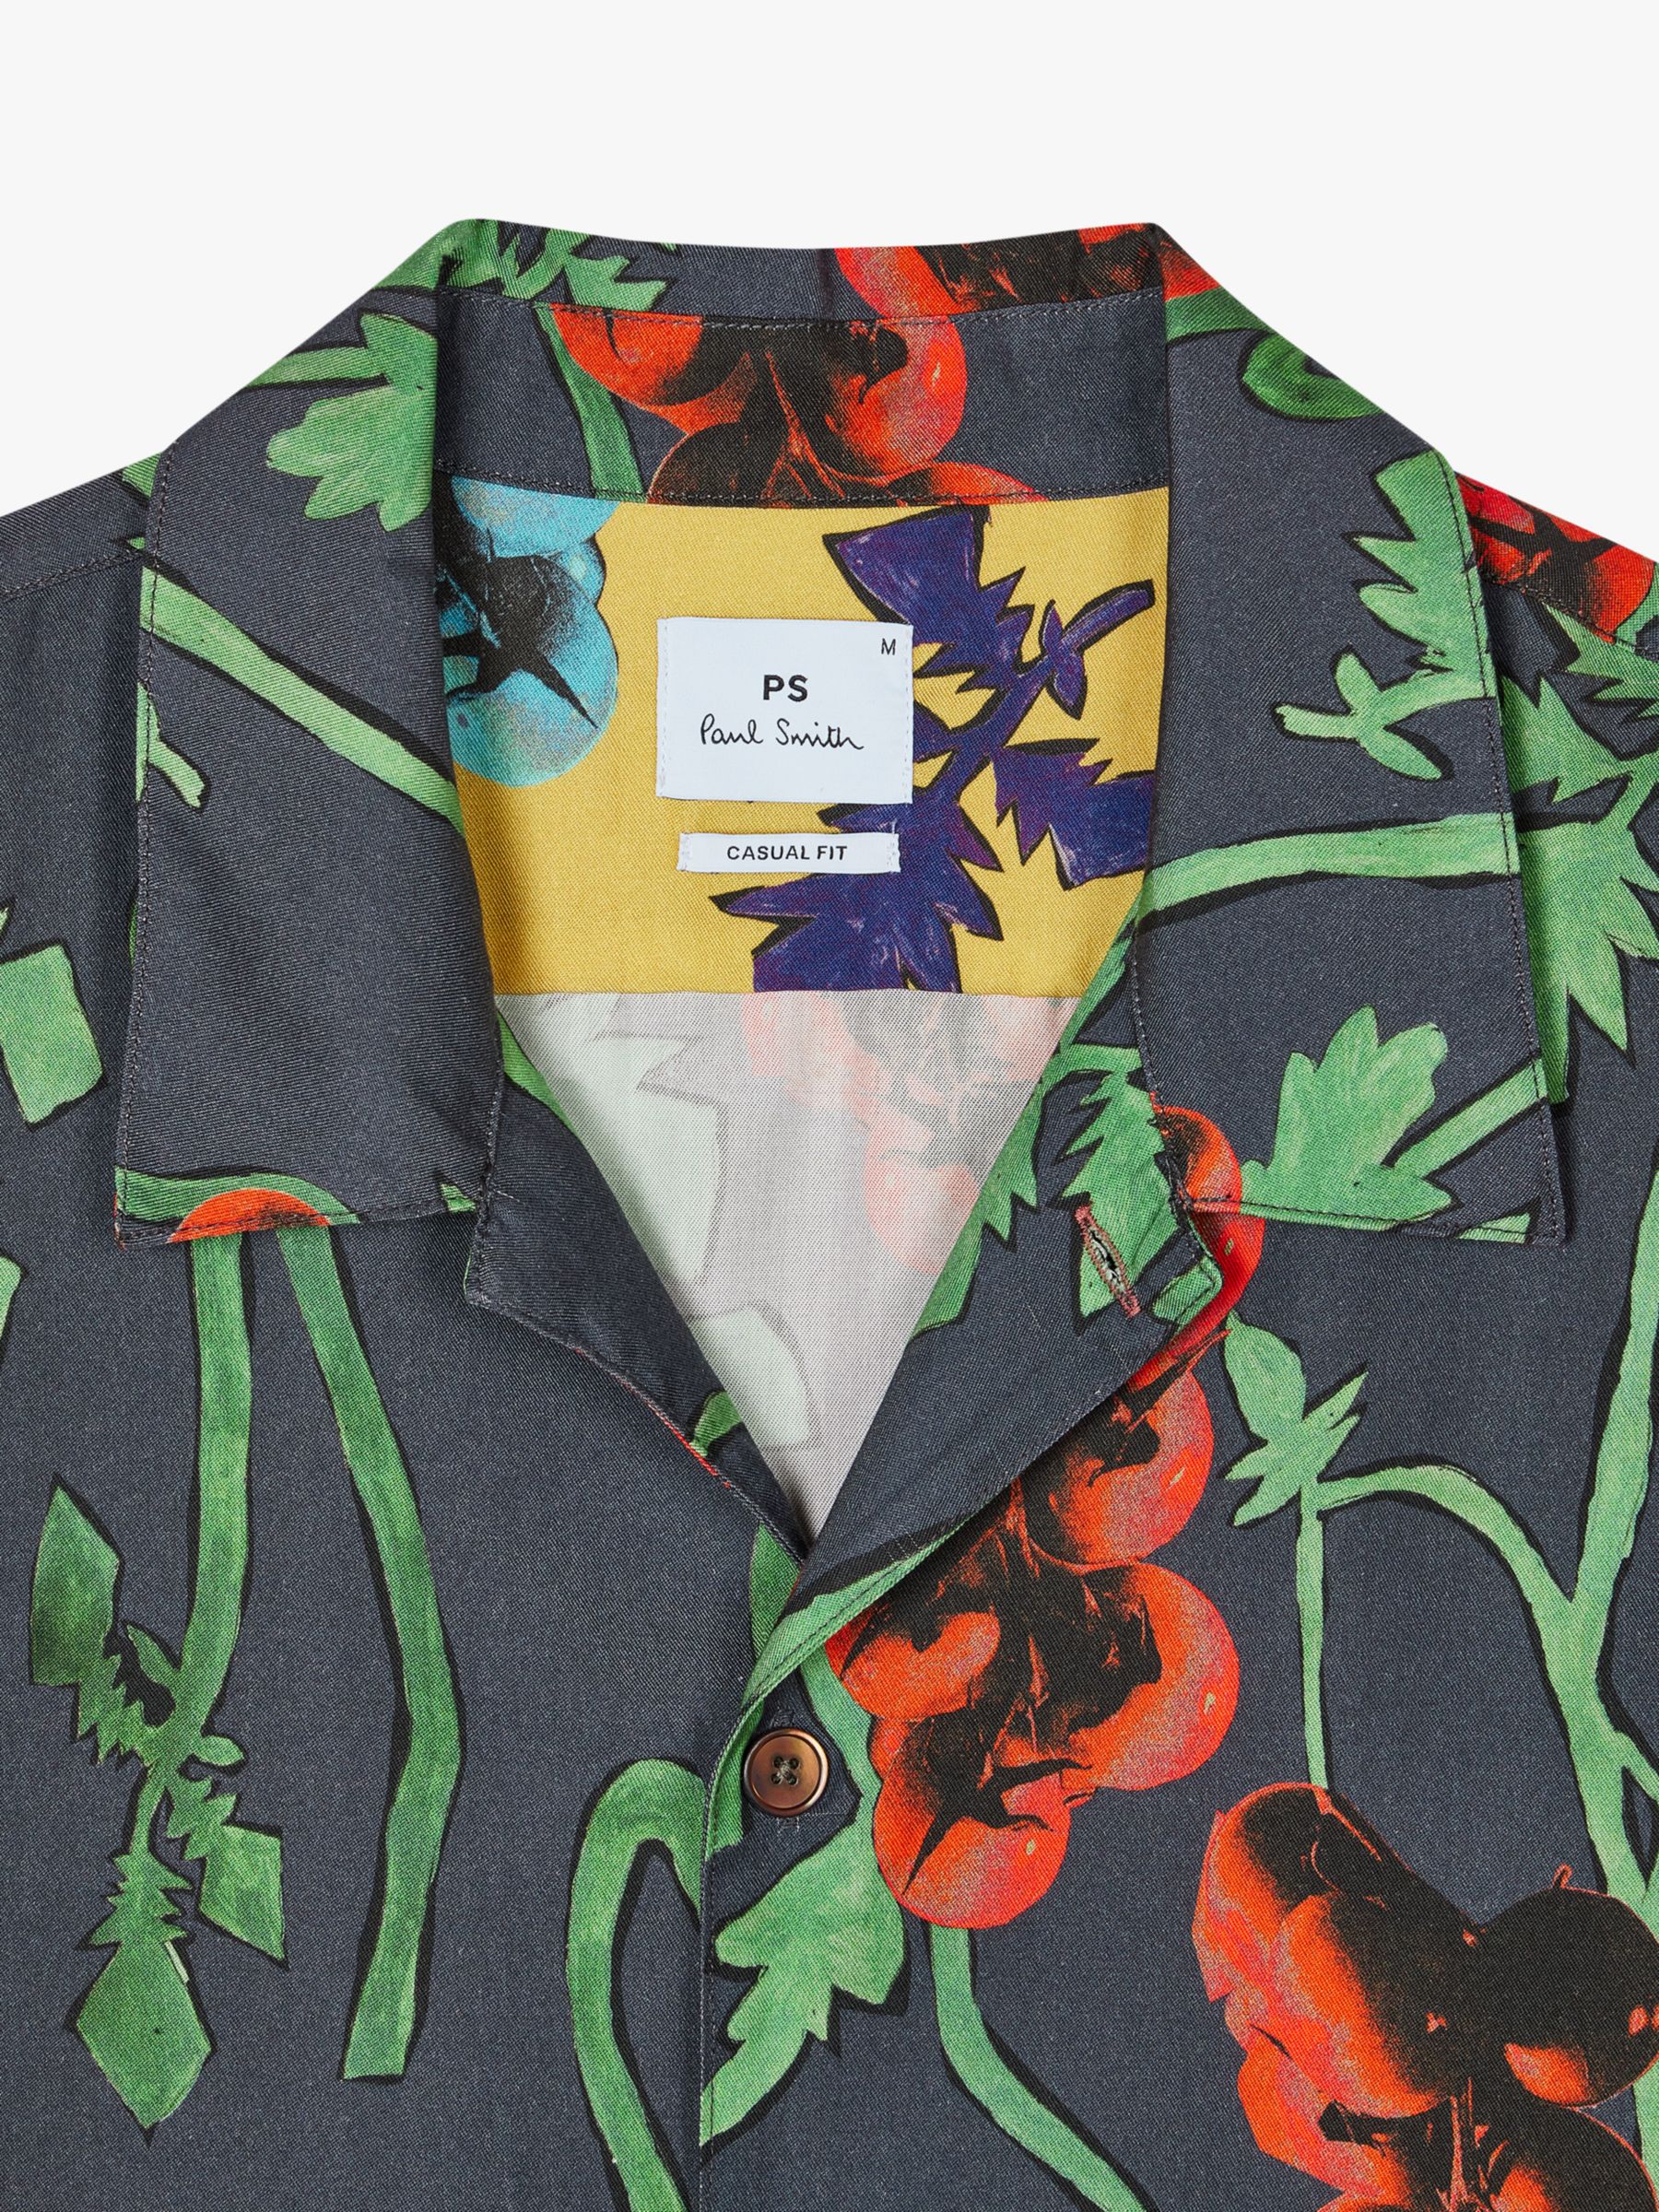 Paul Smith Short Sleeve Floral Shirt, Multi, S